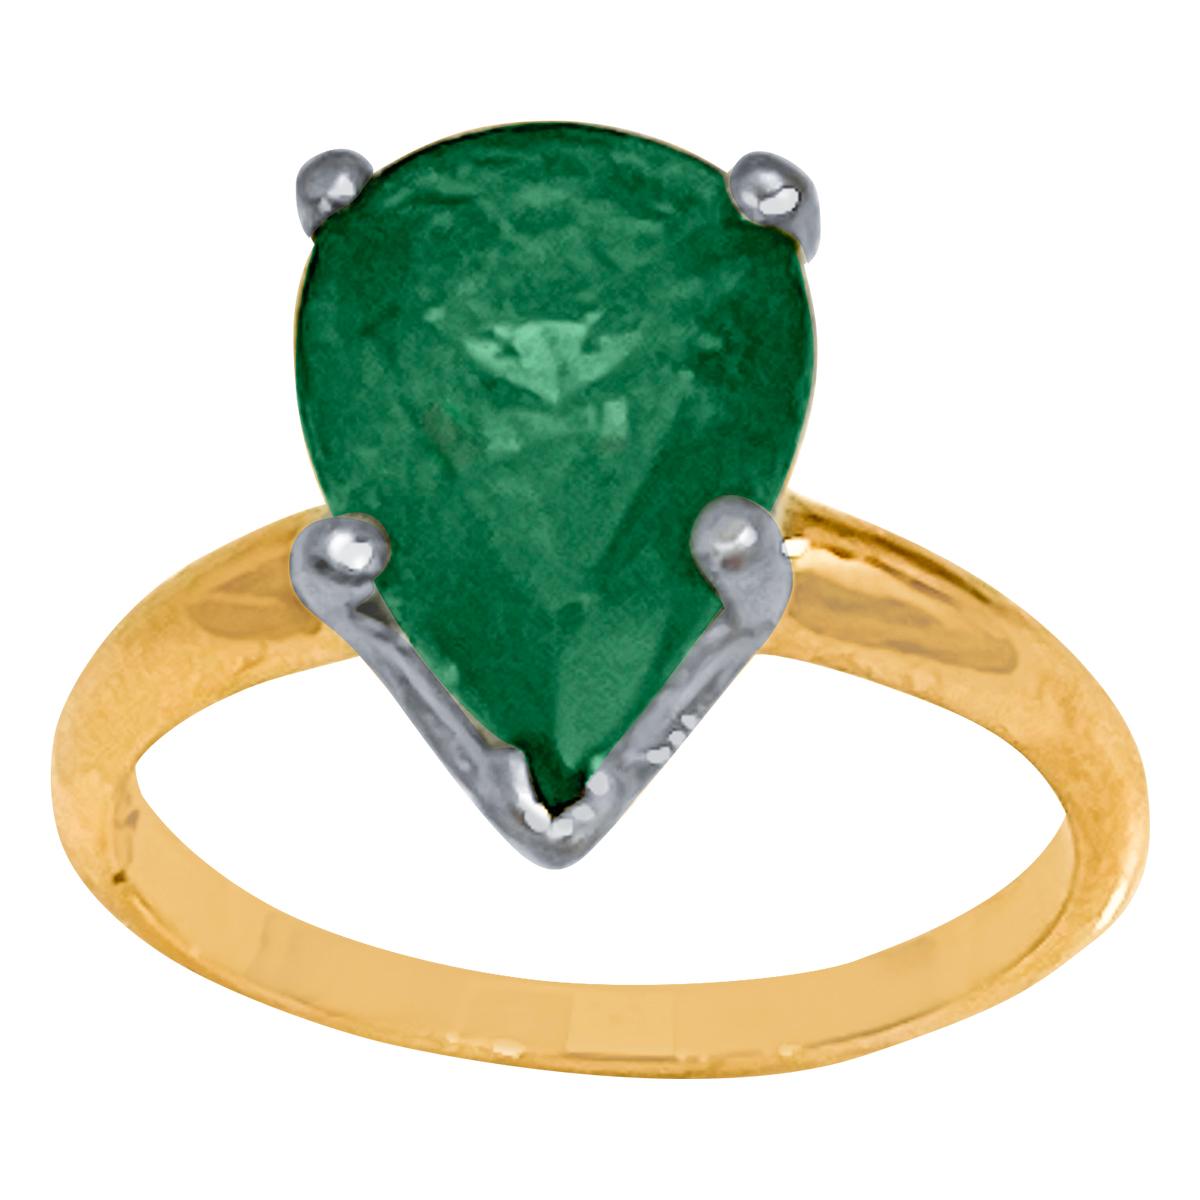 3 Carat Pear Cut Natural Emerald Ring 14 Karat Yellow & White Gold